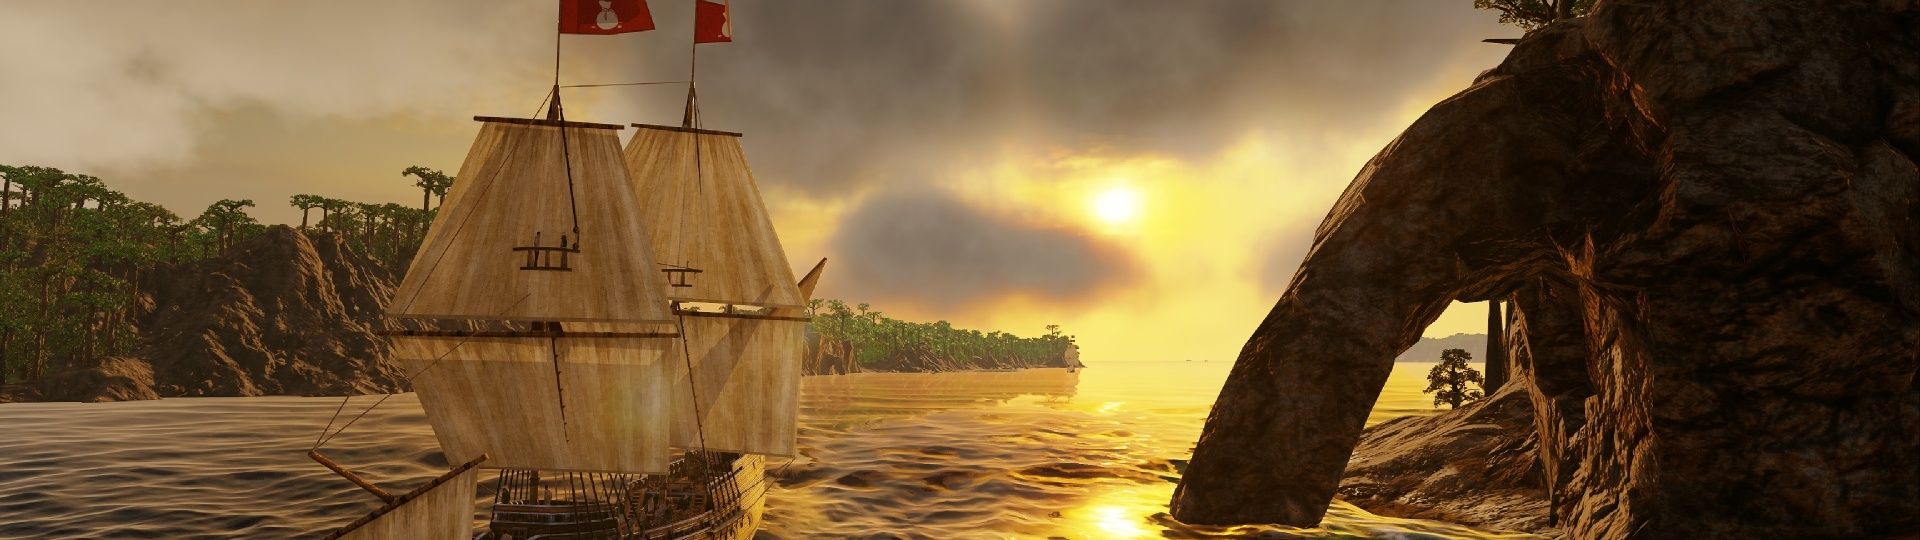 V září vyjde next-gen verze Port Royale 4 | Novinky